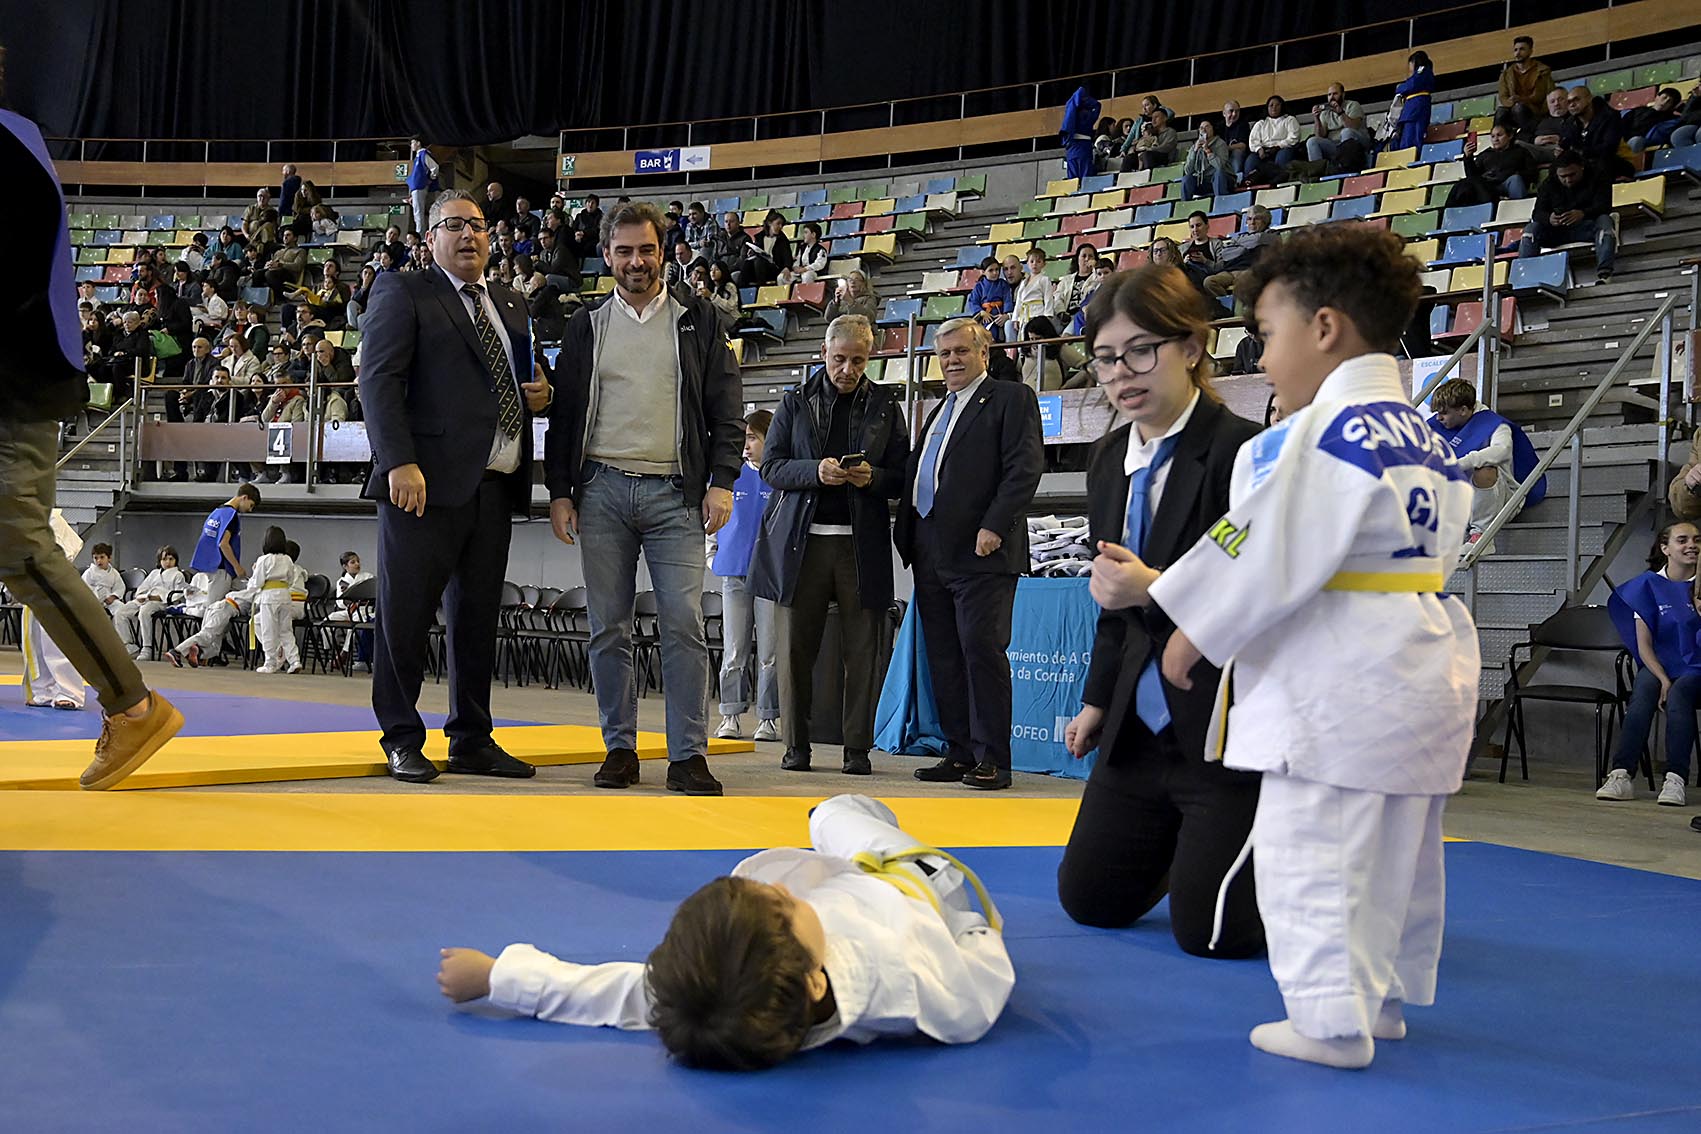 Image 5 of article Diego Calvo recolle o premio concedido á Xunta na 36ª edición do Trofeo de judo Miguelito